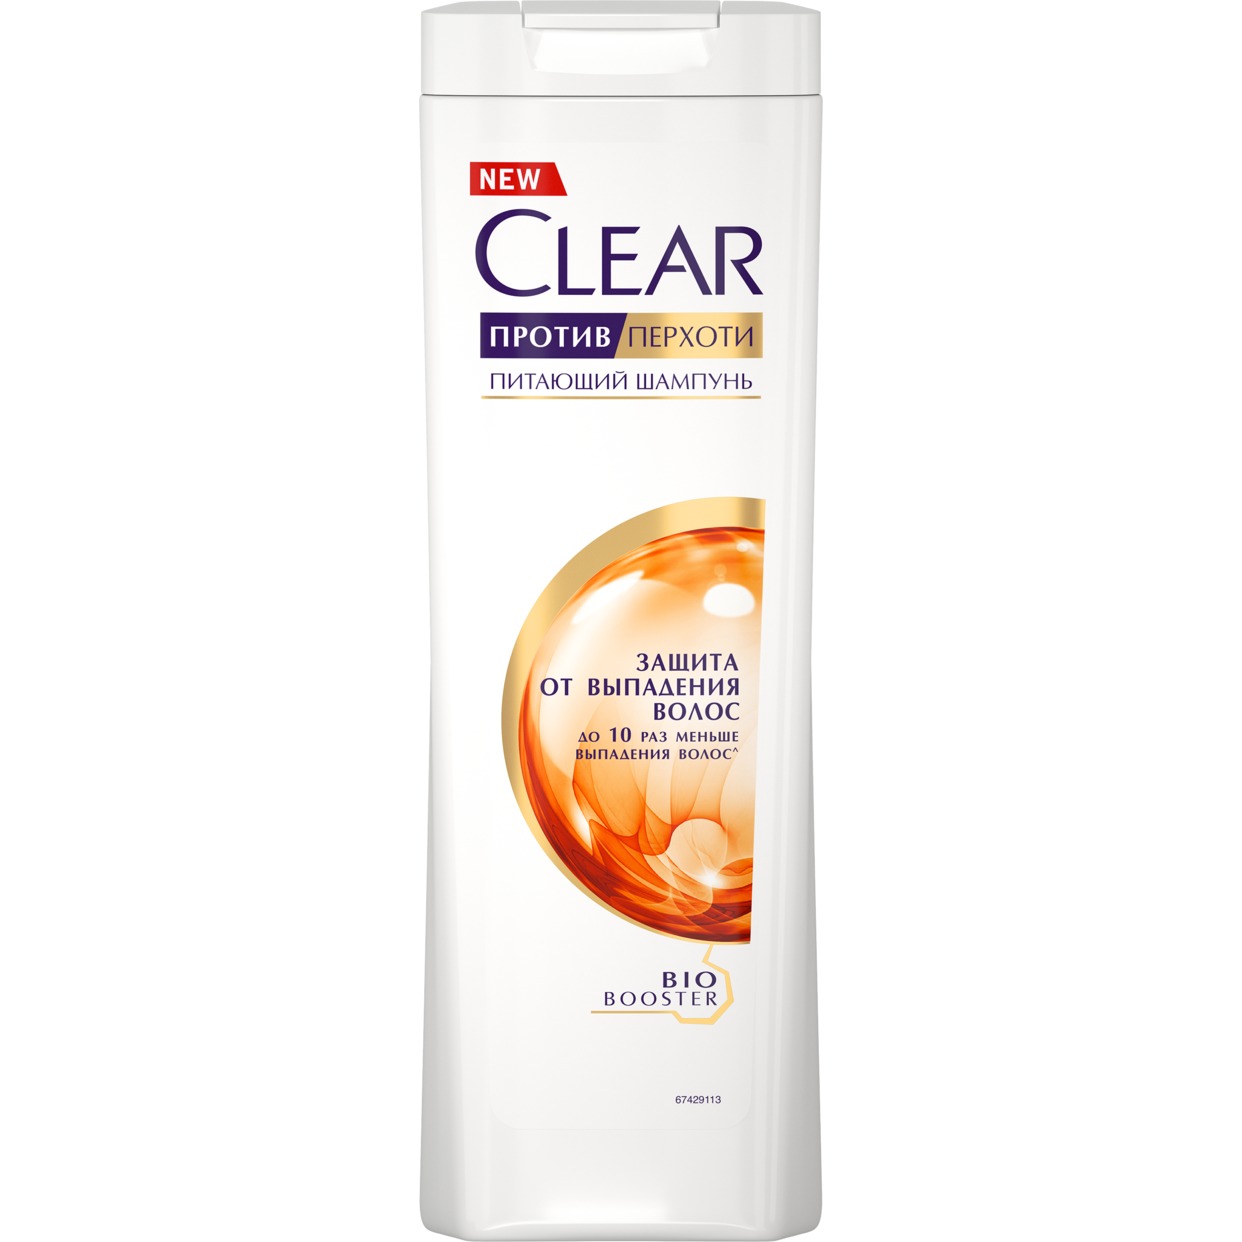 Шампунь Clear Vita abe защита от выпадения волос 400мл по акции в Пятерочке